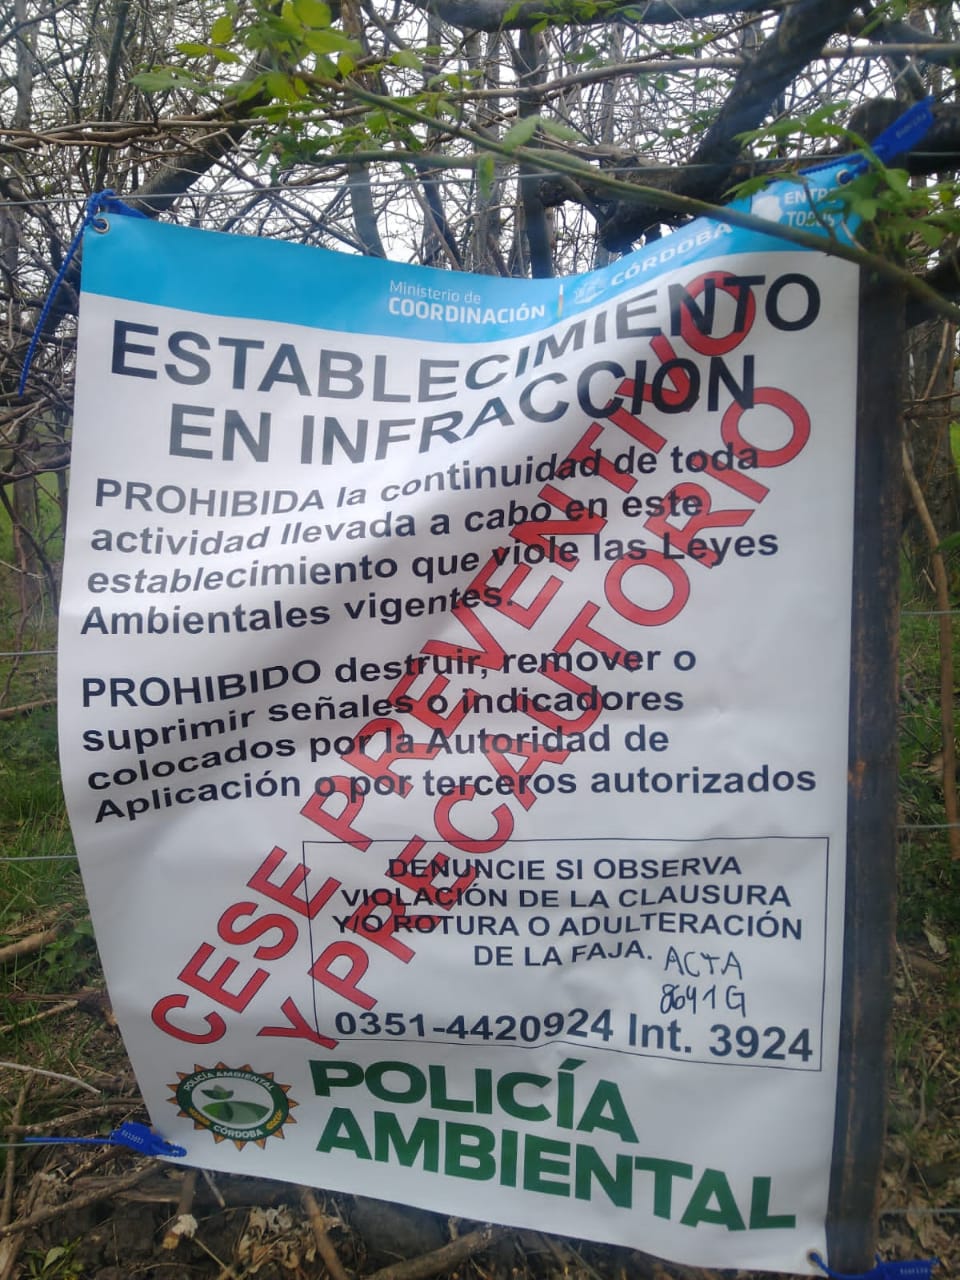 Villa Los Aromos: Otra vez, multada por la policía ambiental